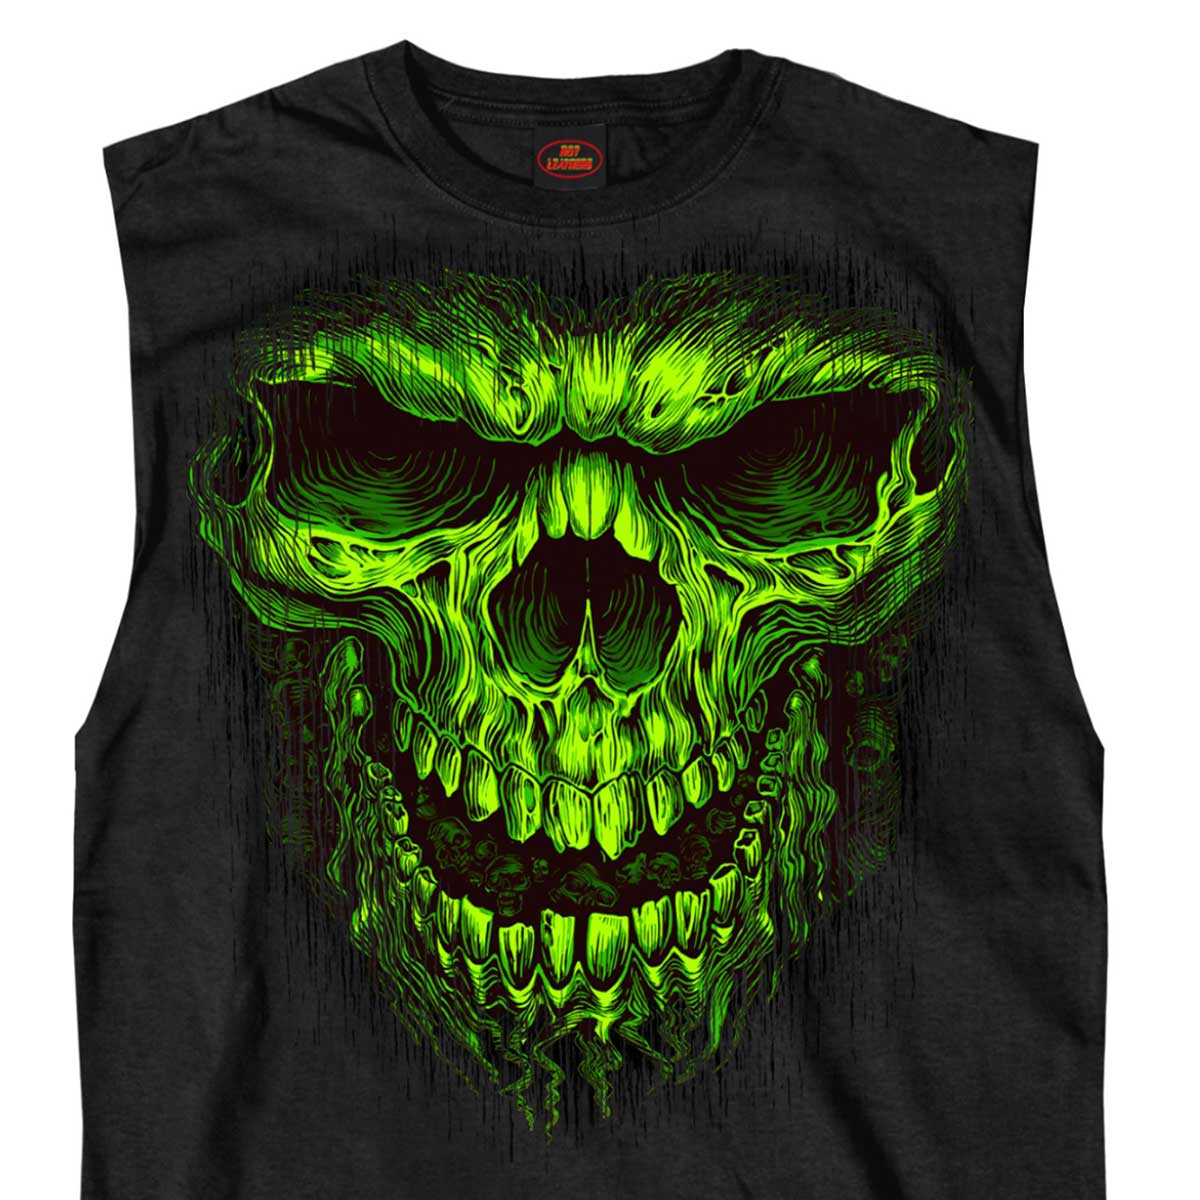 Hot Leathers GMT3201 Men’s Black 'Shredder' Sleeveless T-Shirt